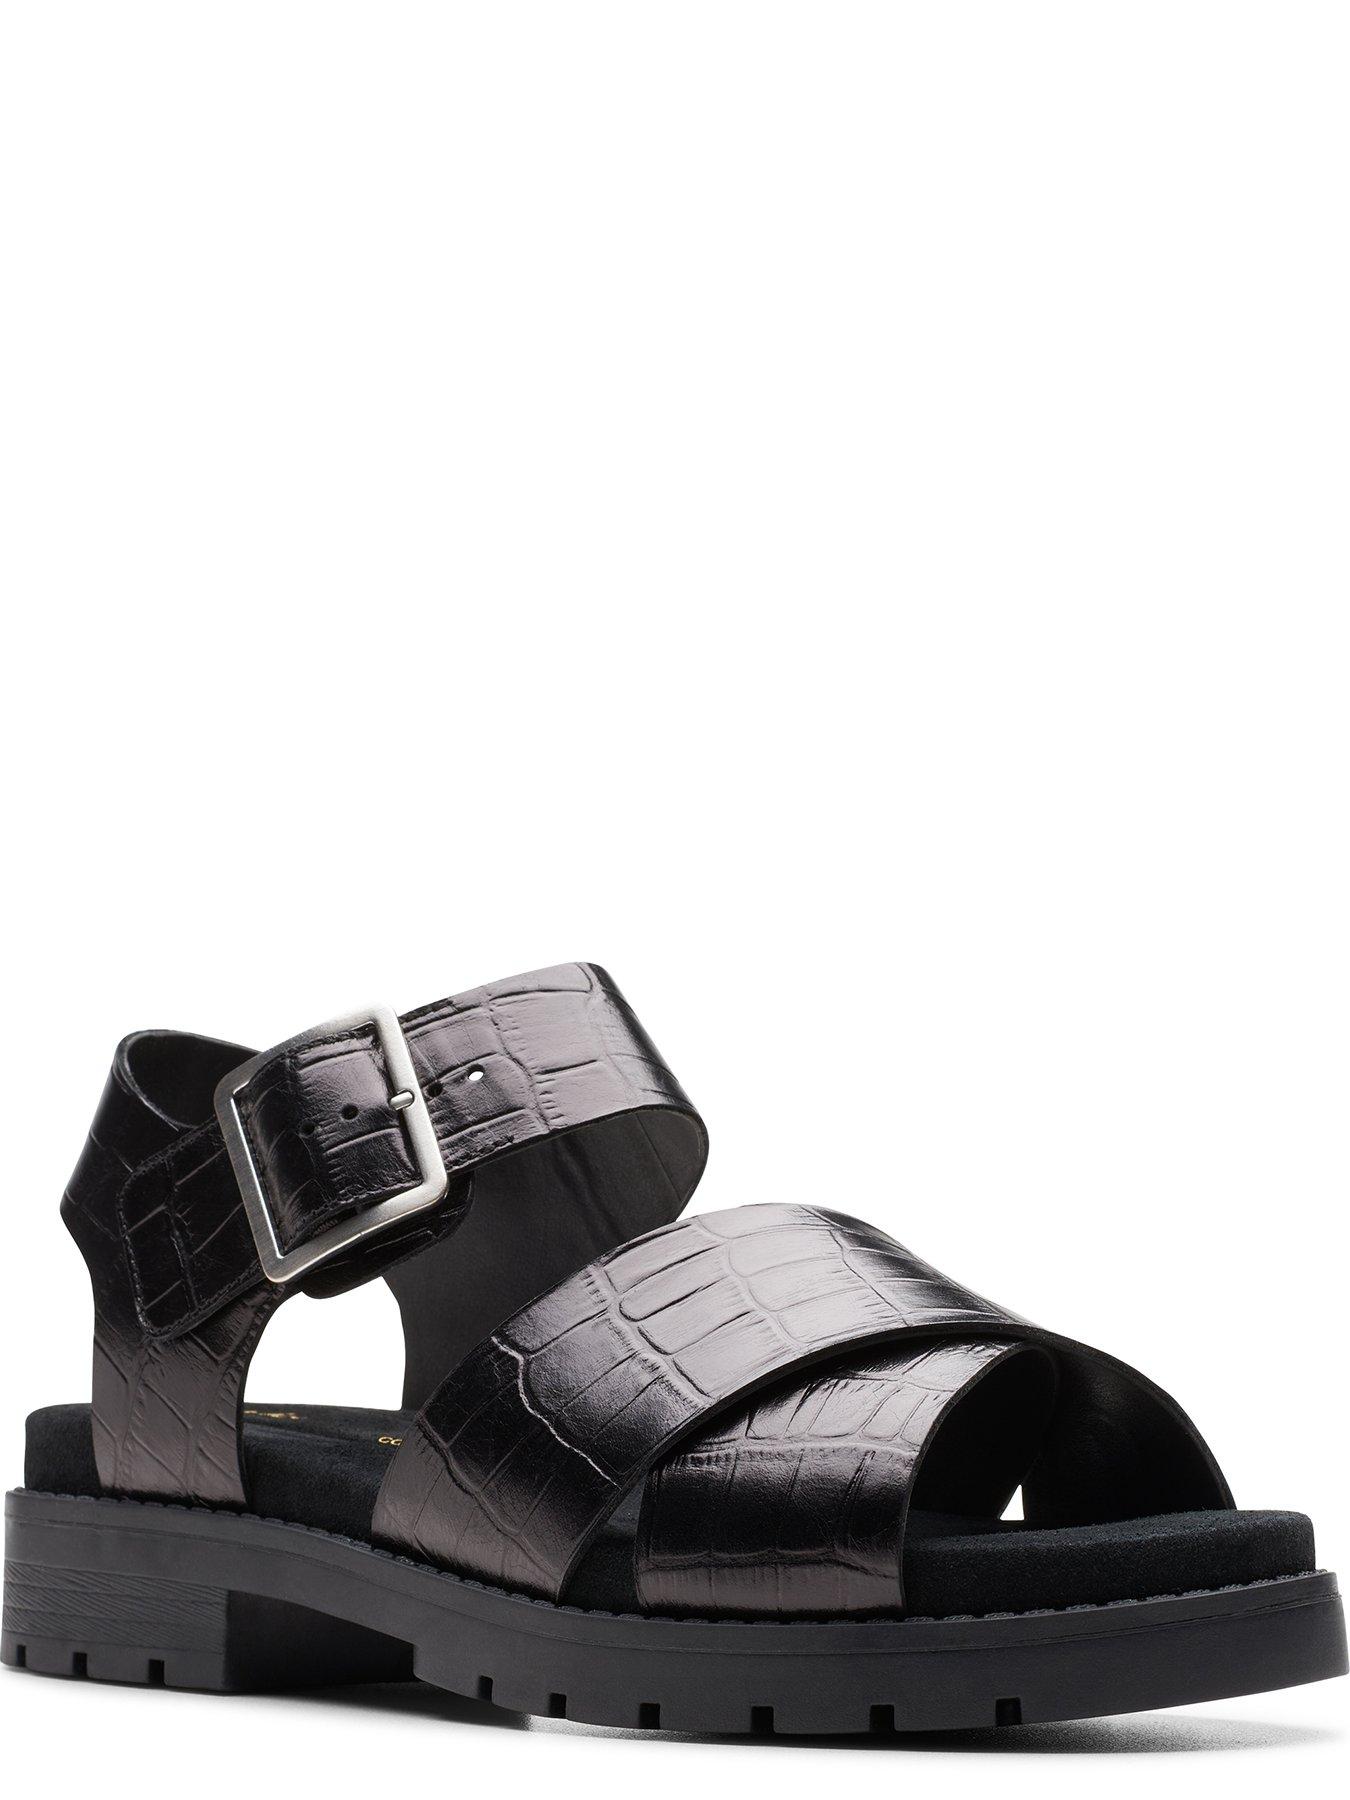 Clarks Orinoco Cross Front Buckle Sandals - Black | Very.co.uk